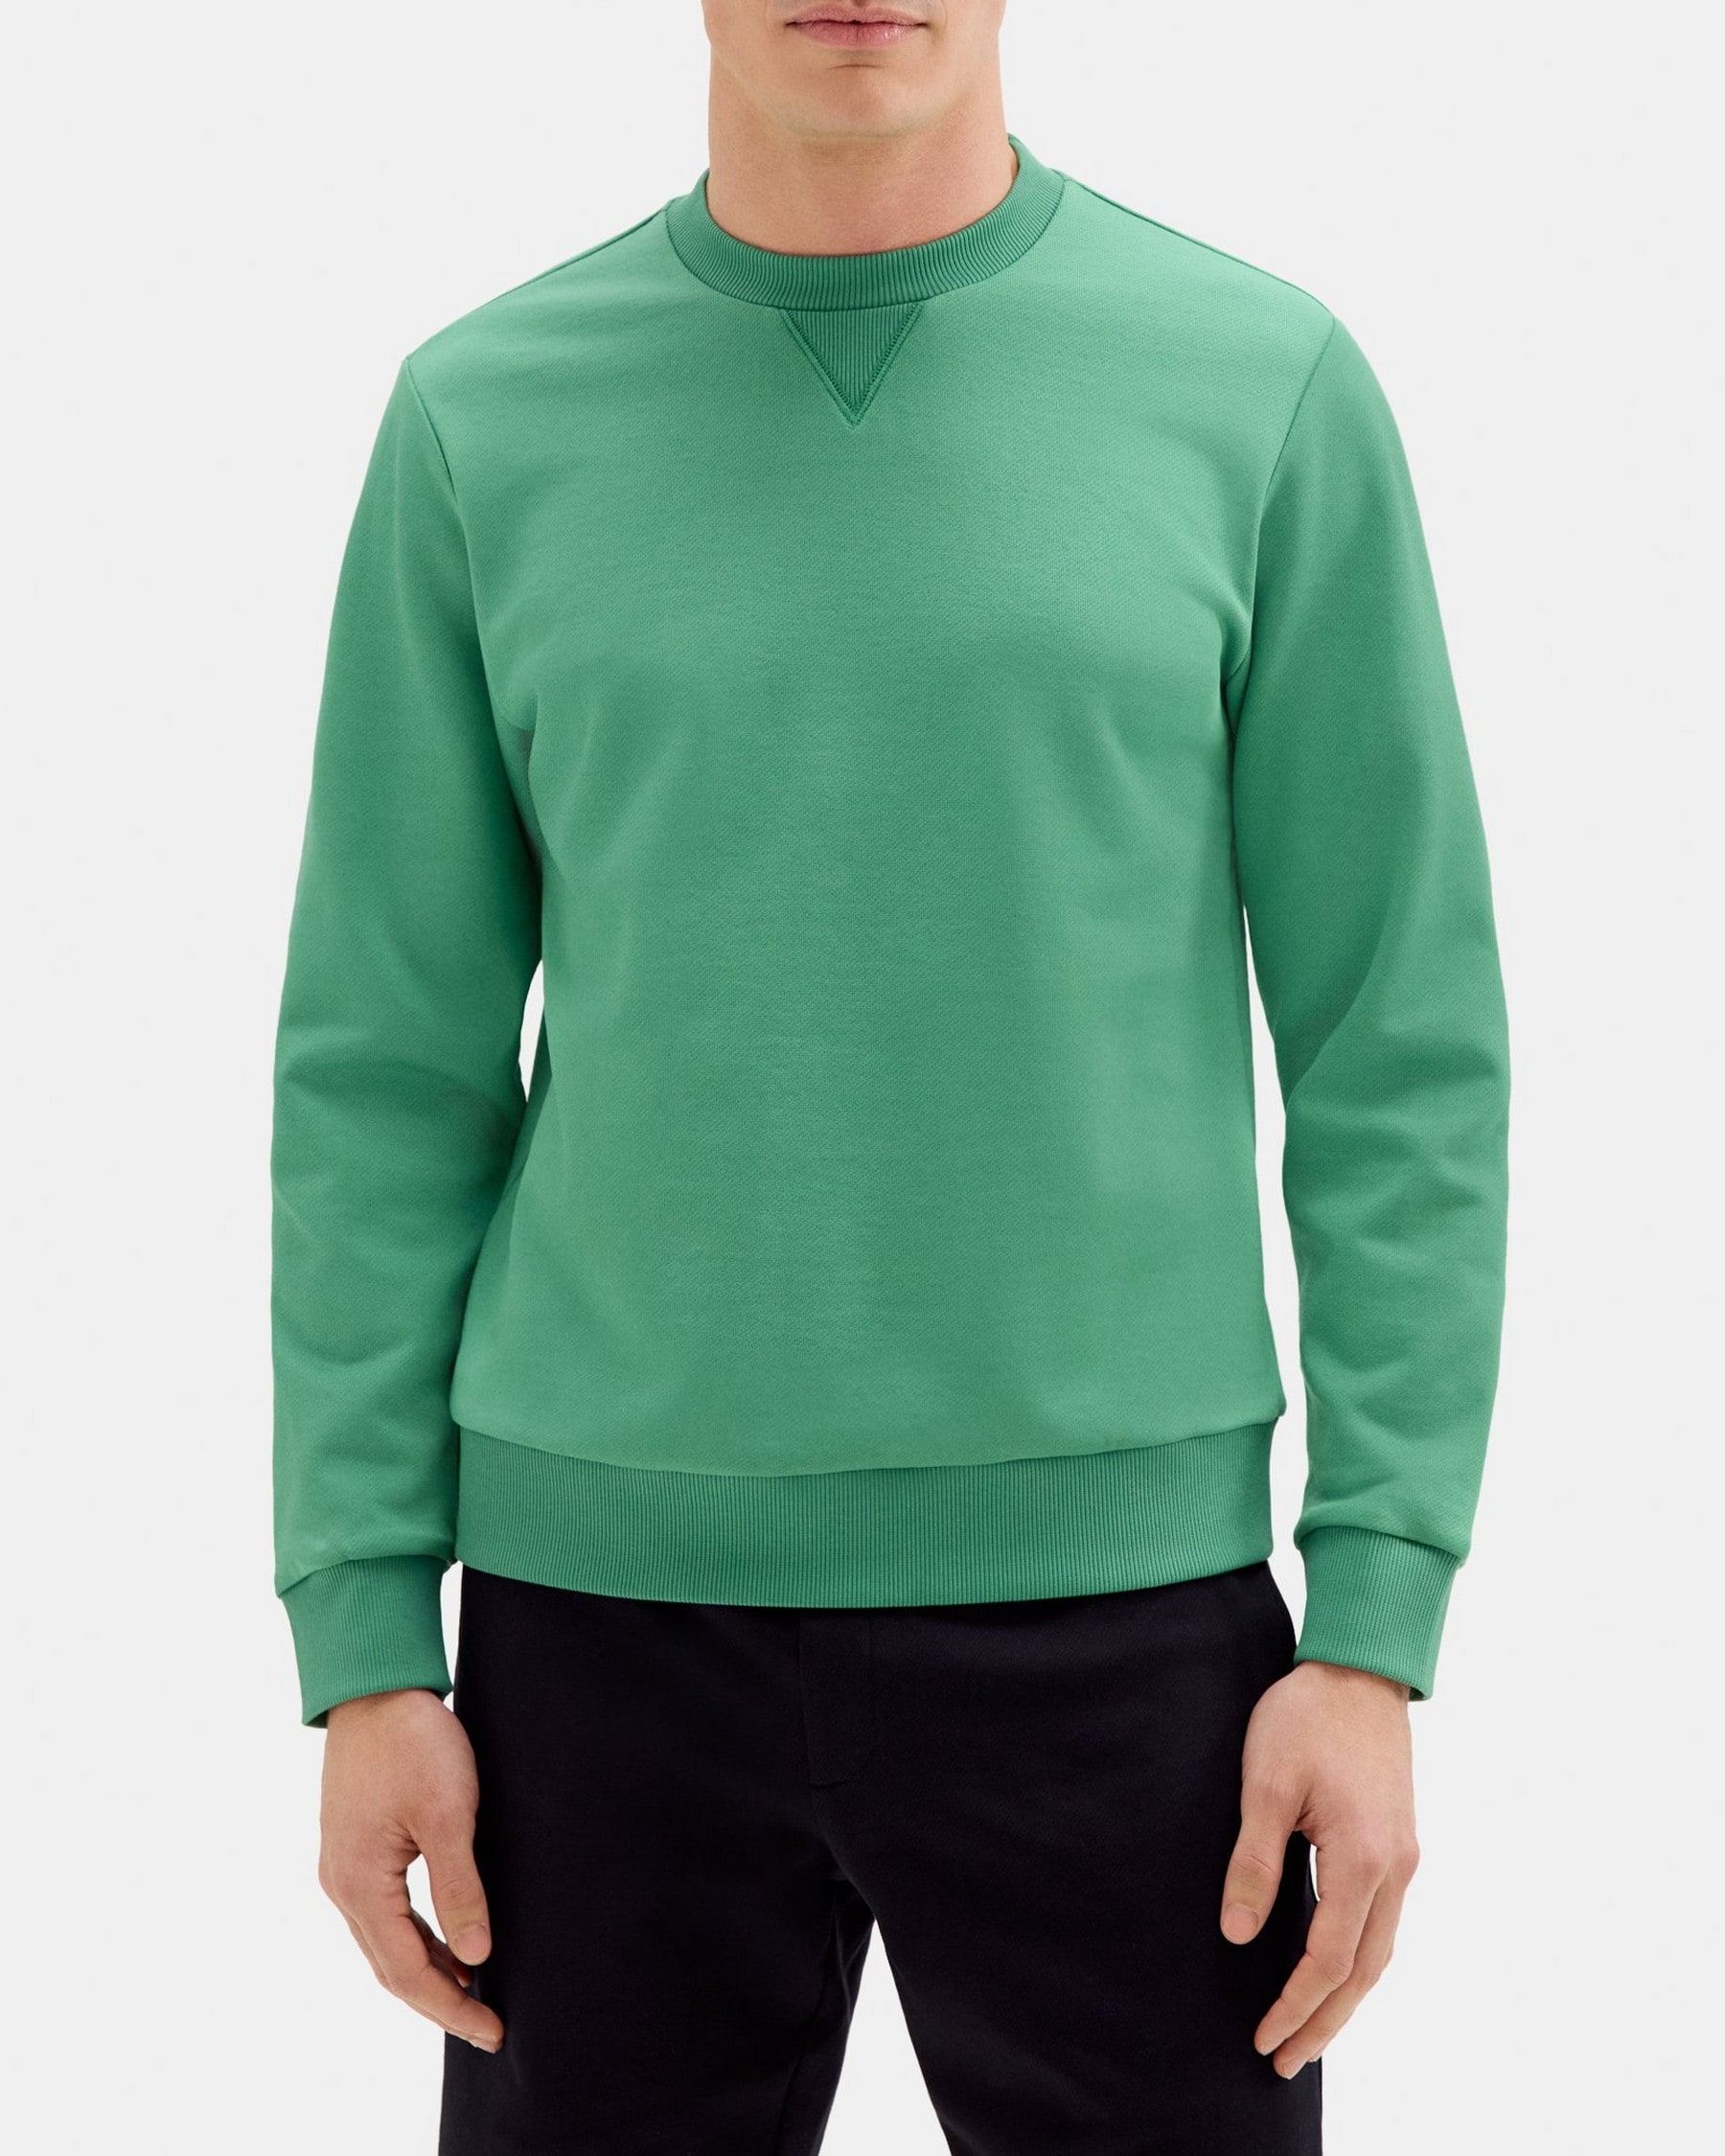 띠어리 Theory Essential Sweatshirt in Cotton-Blend Terry,JADE GREEN